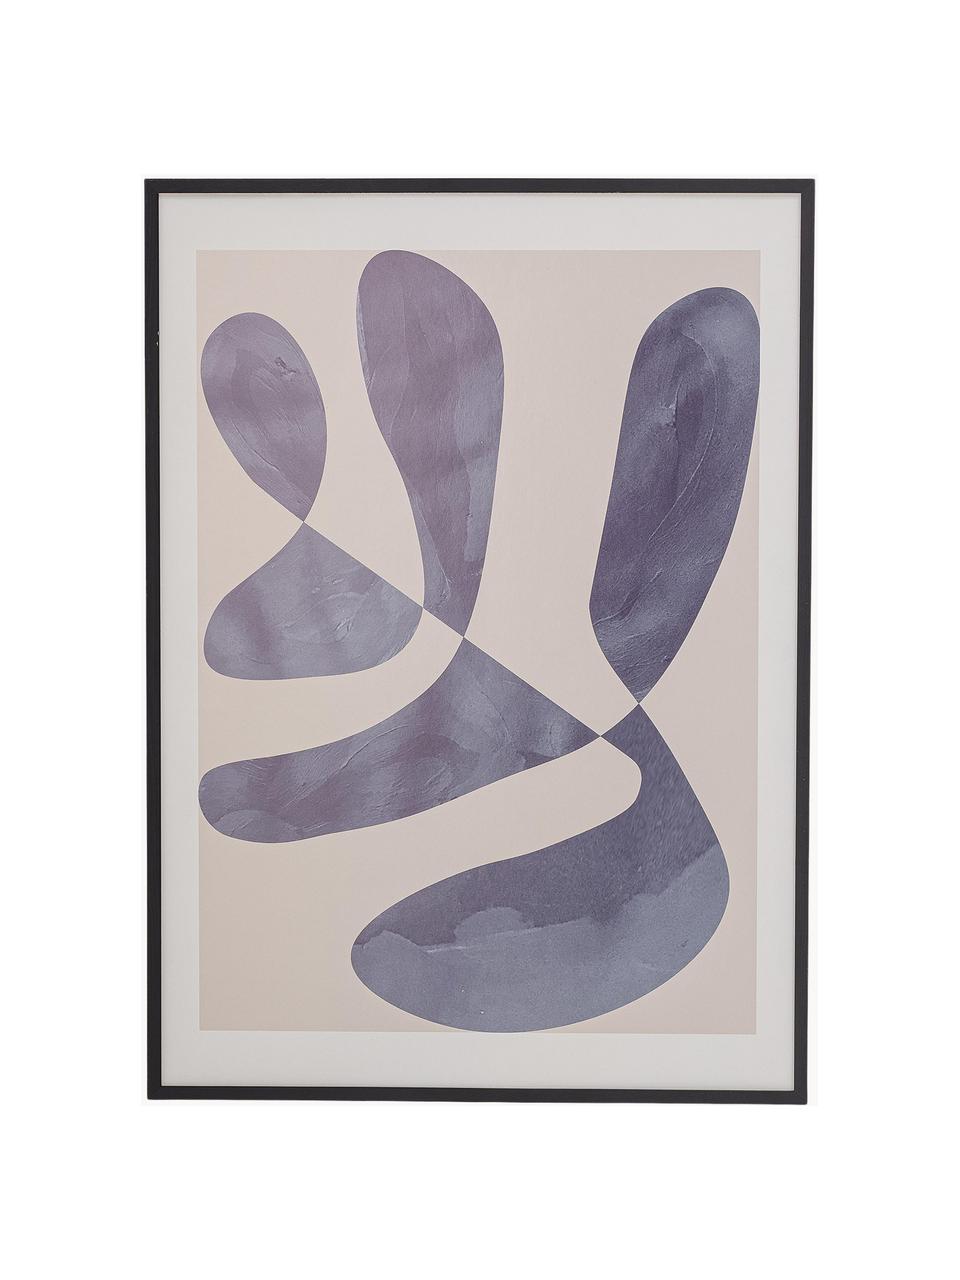 Gerahmter Digitaldruck Luane, Bild: Digitaldruck auf Papier, Rahmen: Holz, lackiert, Front: Plexiglas, Grau, Beige, Weiß, B 52 x H 72 cm